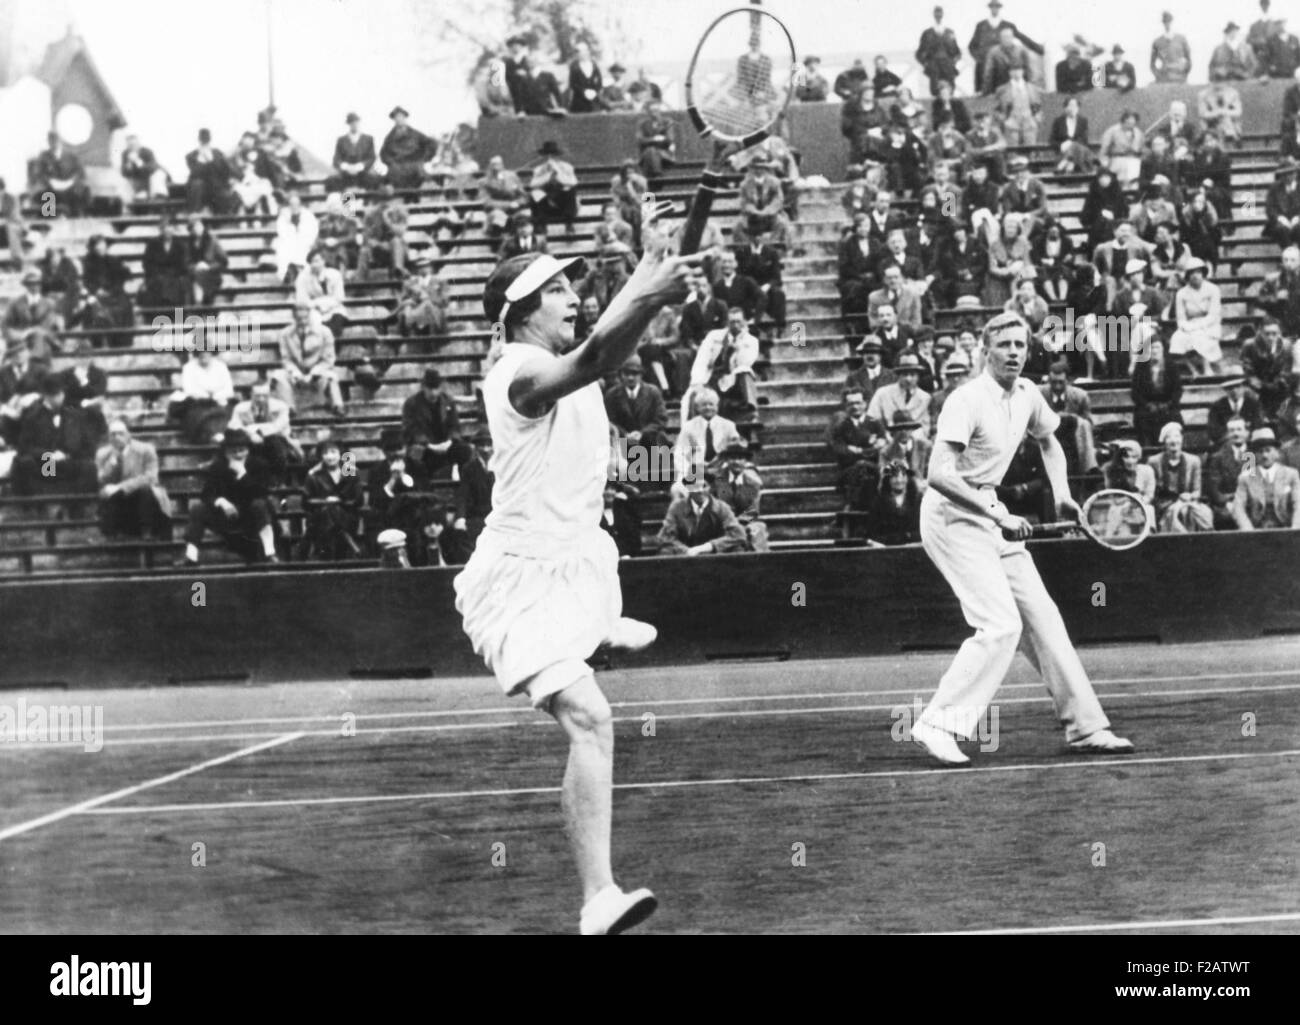 Américains Helen Wills Moody et Sidney Wood, en double mixte, jouer en France. Le 31 mai 1932. Ils se sont classés deuxième, perdant la finale à Betty Nuthall et Fred Perry de la Grande-Bretagne au Stade Roland Garros, Auteuil, France. CSU (2015   1577 11) Banque D'Images